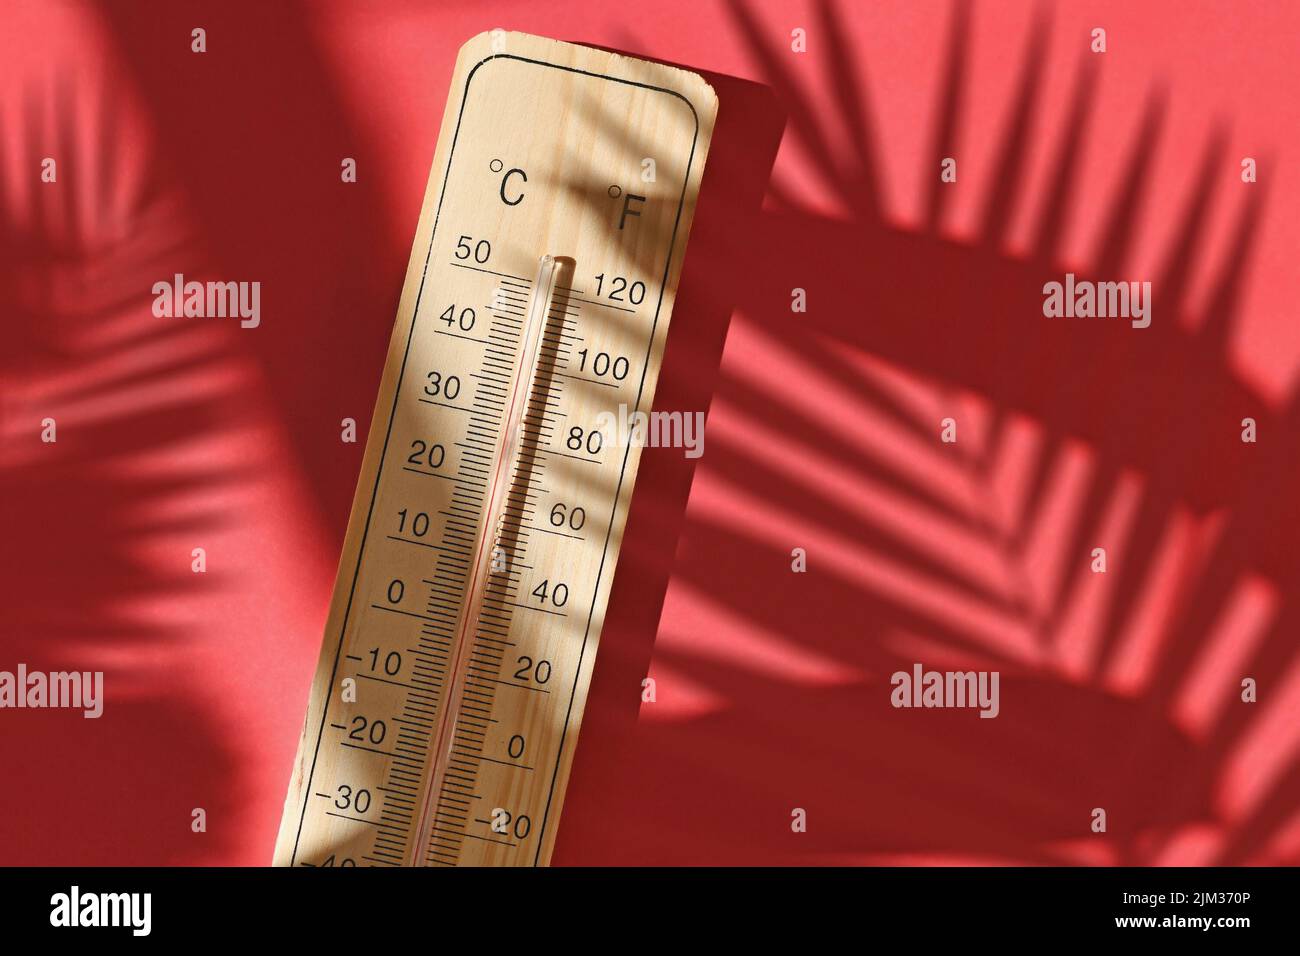 Termómetro de madera que muestra 40 grados Celsius o 104 grados Fahrenheit durante la ola de calor del verano Foto de stock